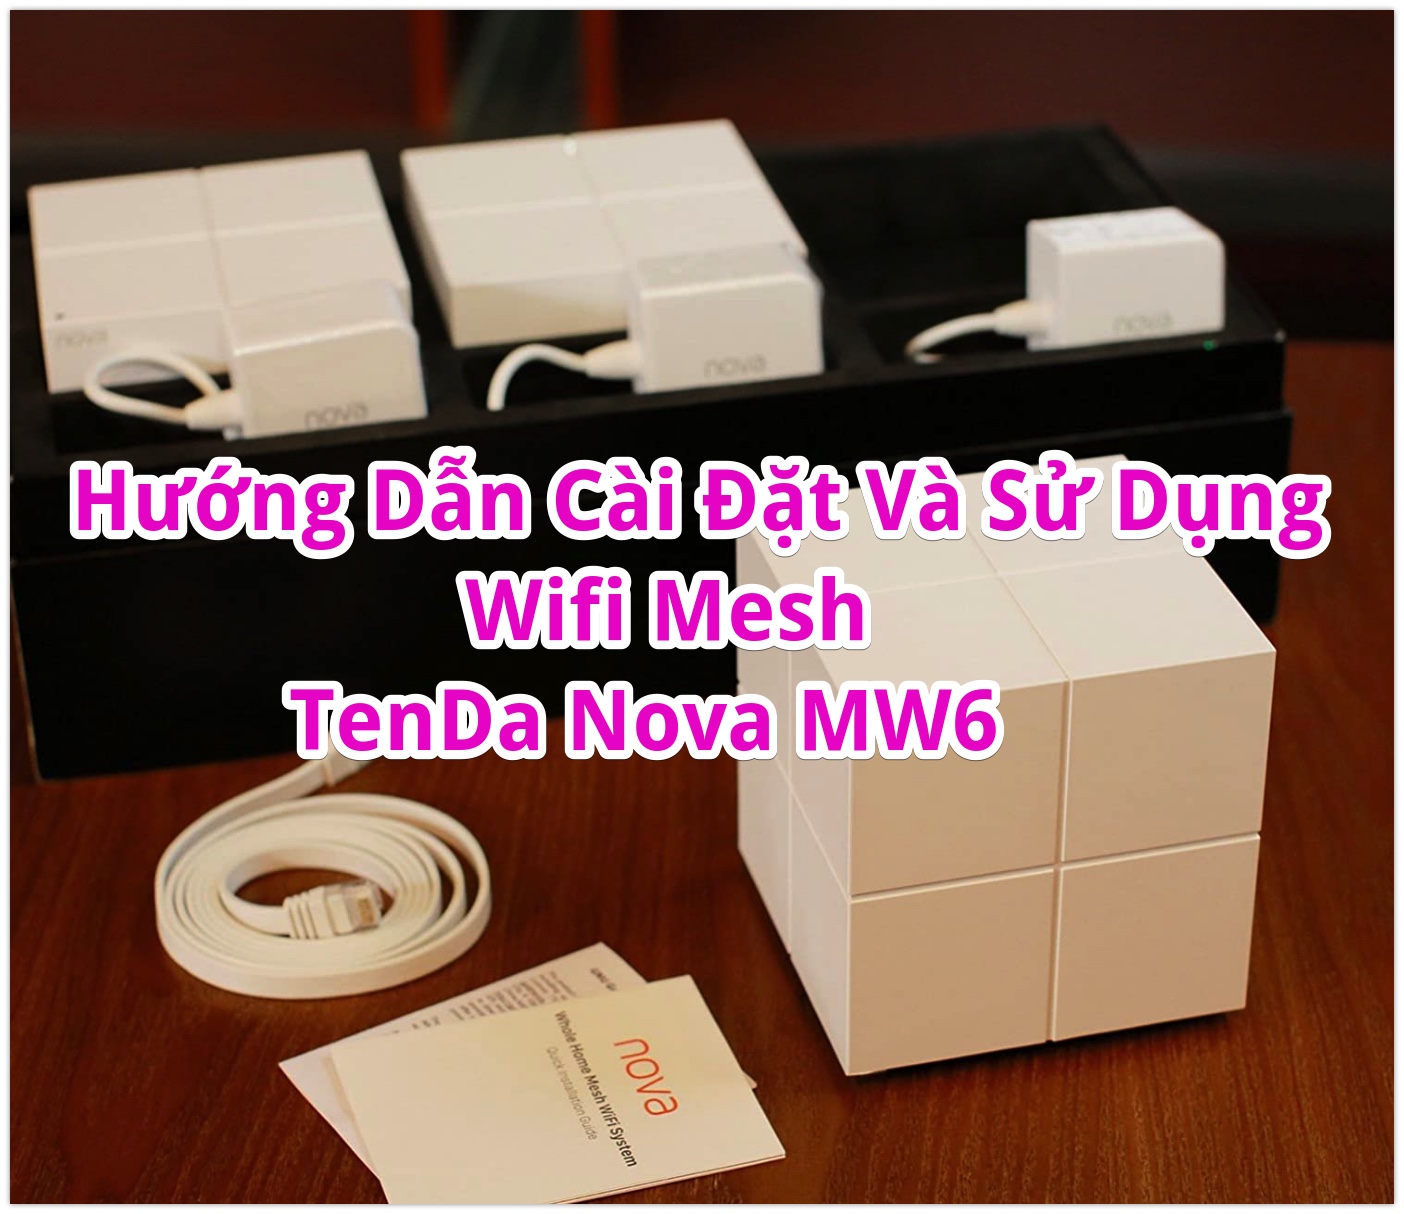 Hướng Dẫn Cài Đặt Và Sử Dụng Bộ Phát wifi Mesh Tenda Nova MW6 và Nova MW3